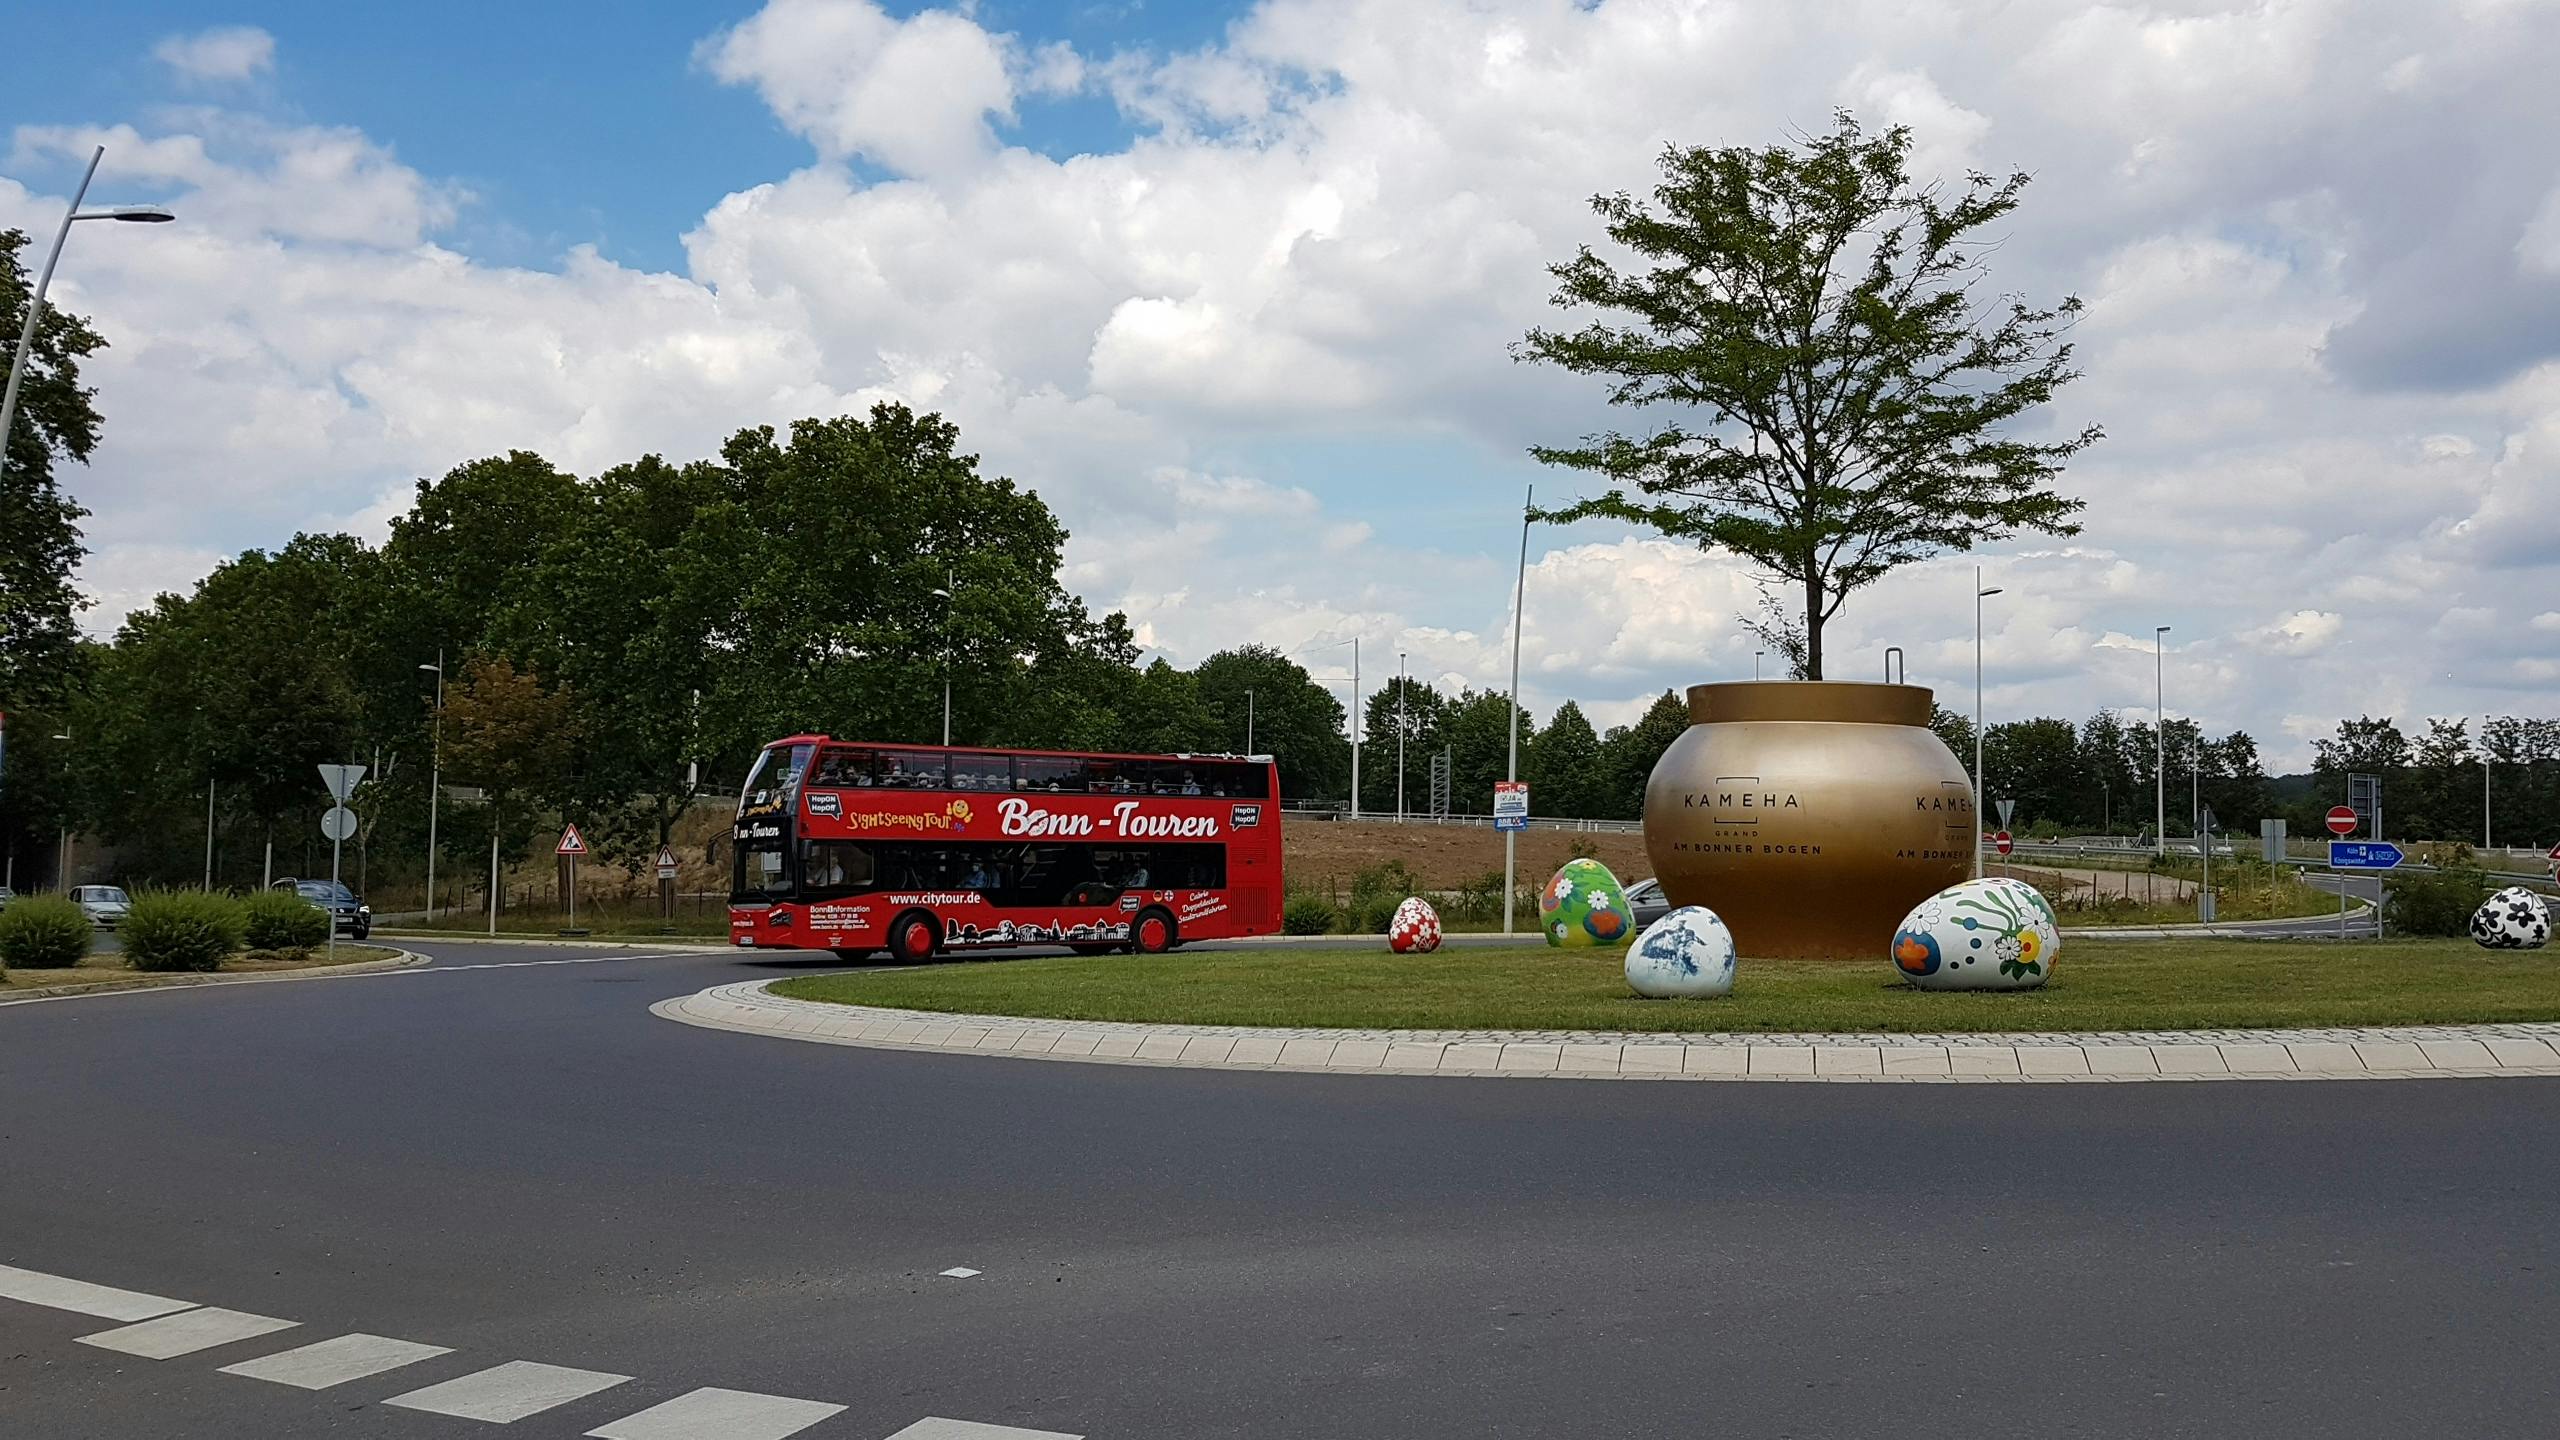 24 hour Bonn hop on off bus tour Musement